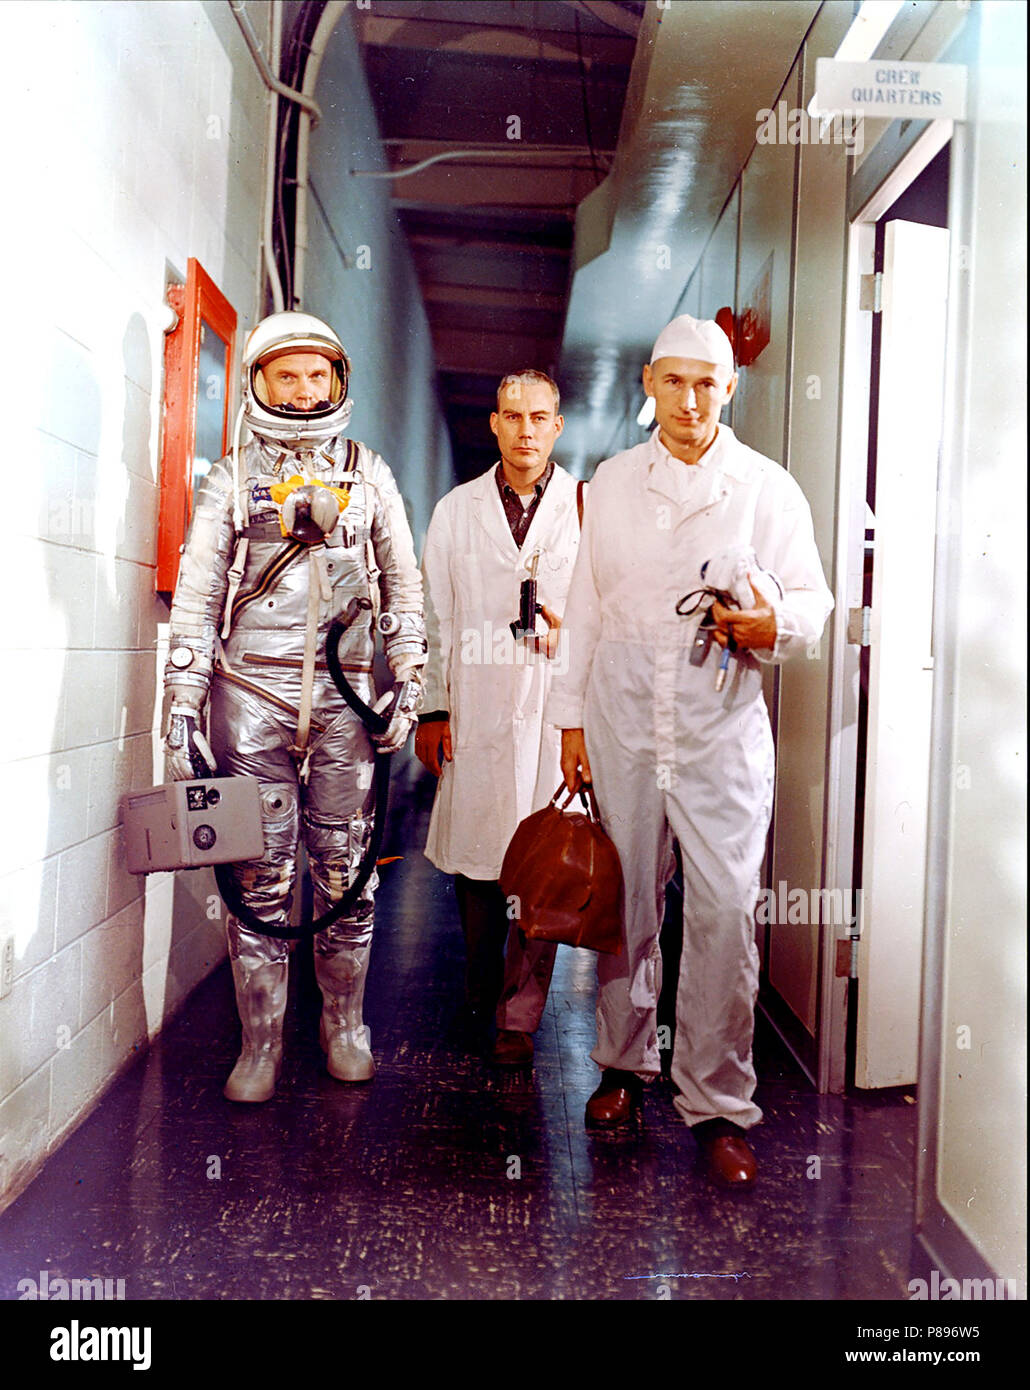 El astronauta John H. Glenn, Jr., el Dr. William Douglas, los astronautas cirujano de vuelo y especialista en equipos de Joe Schmitt dejar los habitáculos de la tripulación antes de Mercury-Atlas 6 (MA-6) misión Foto de stock